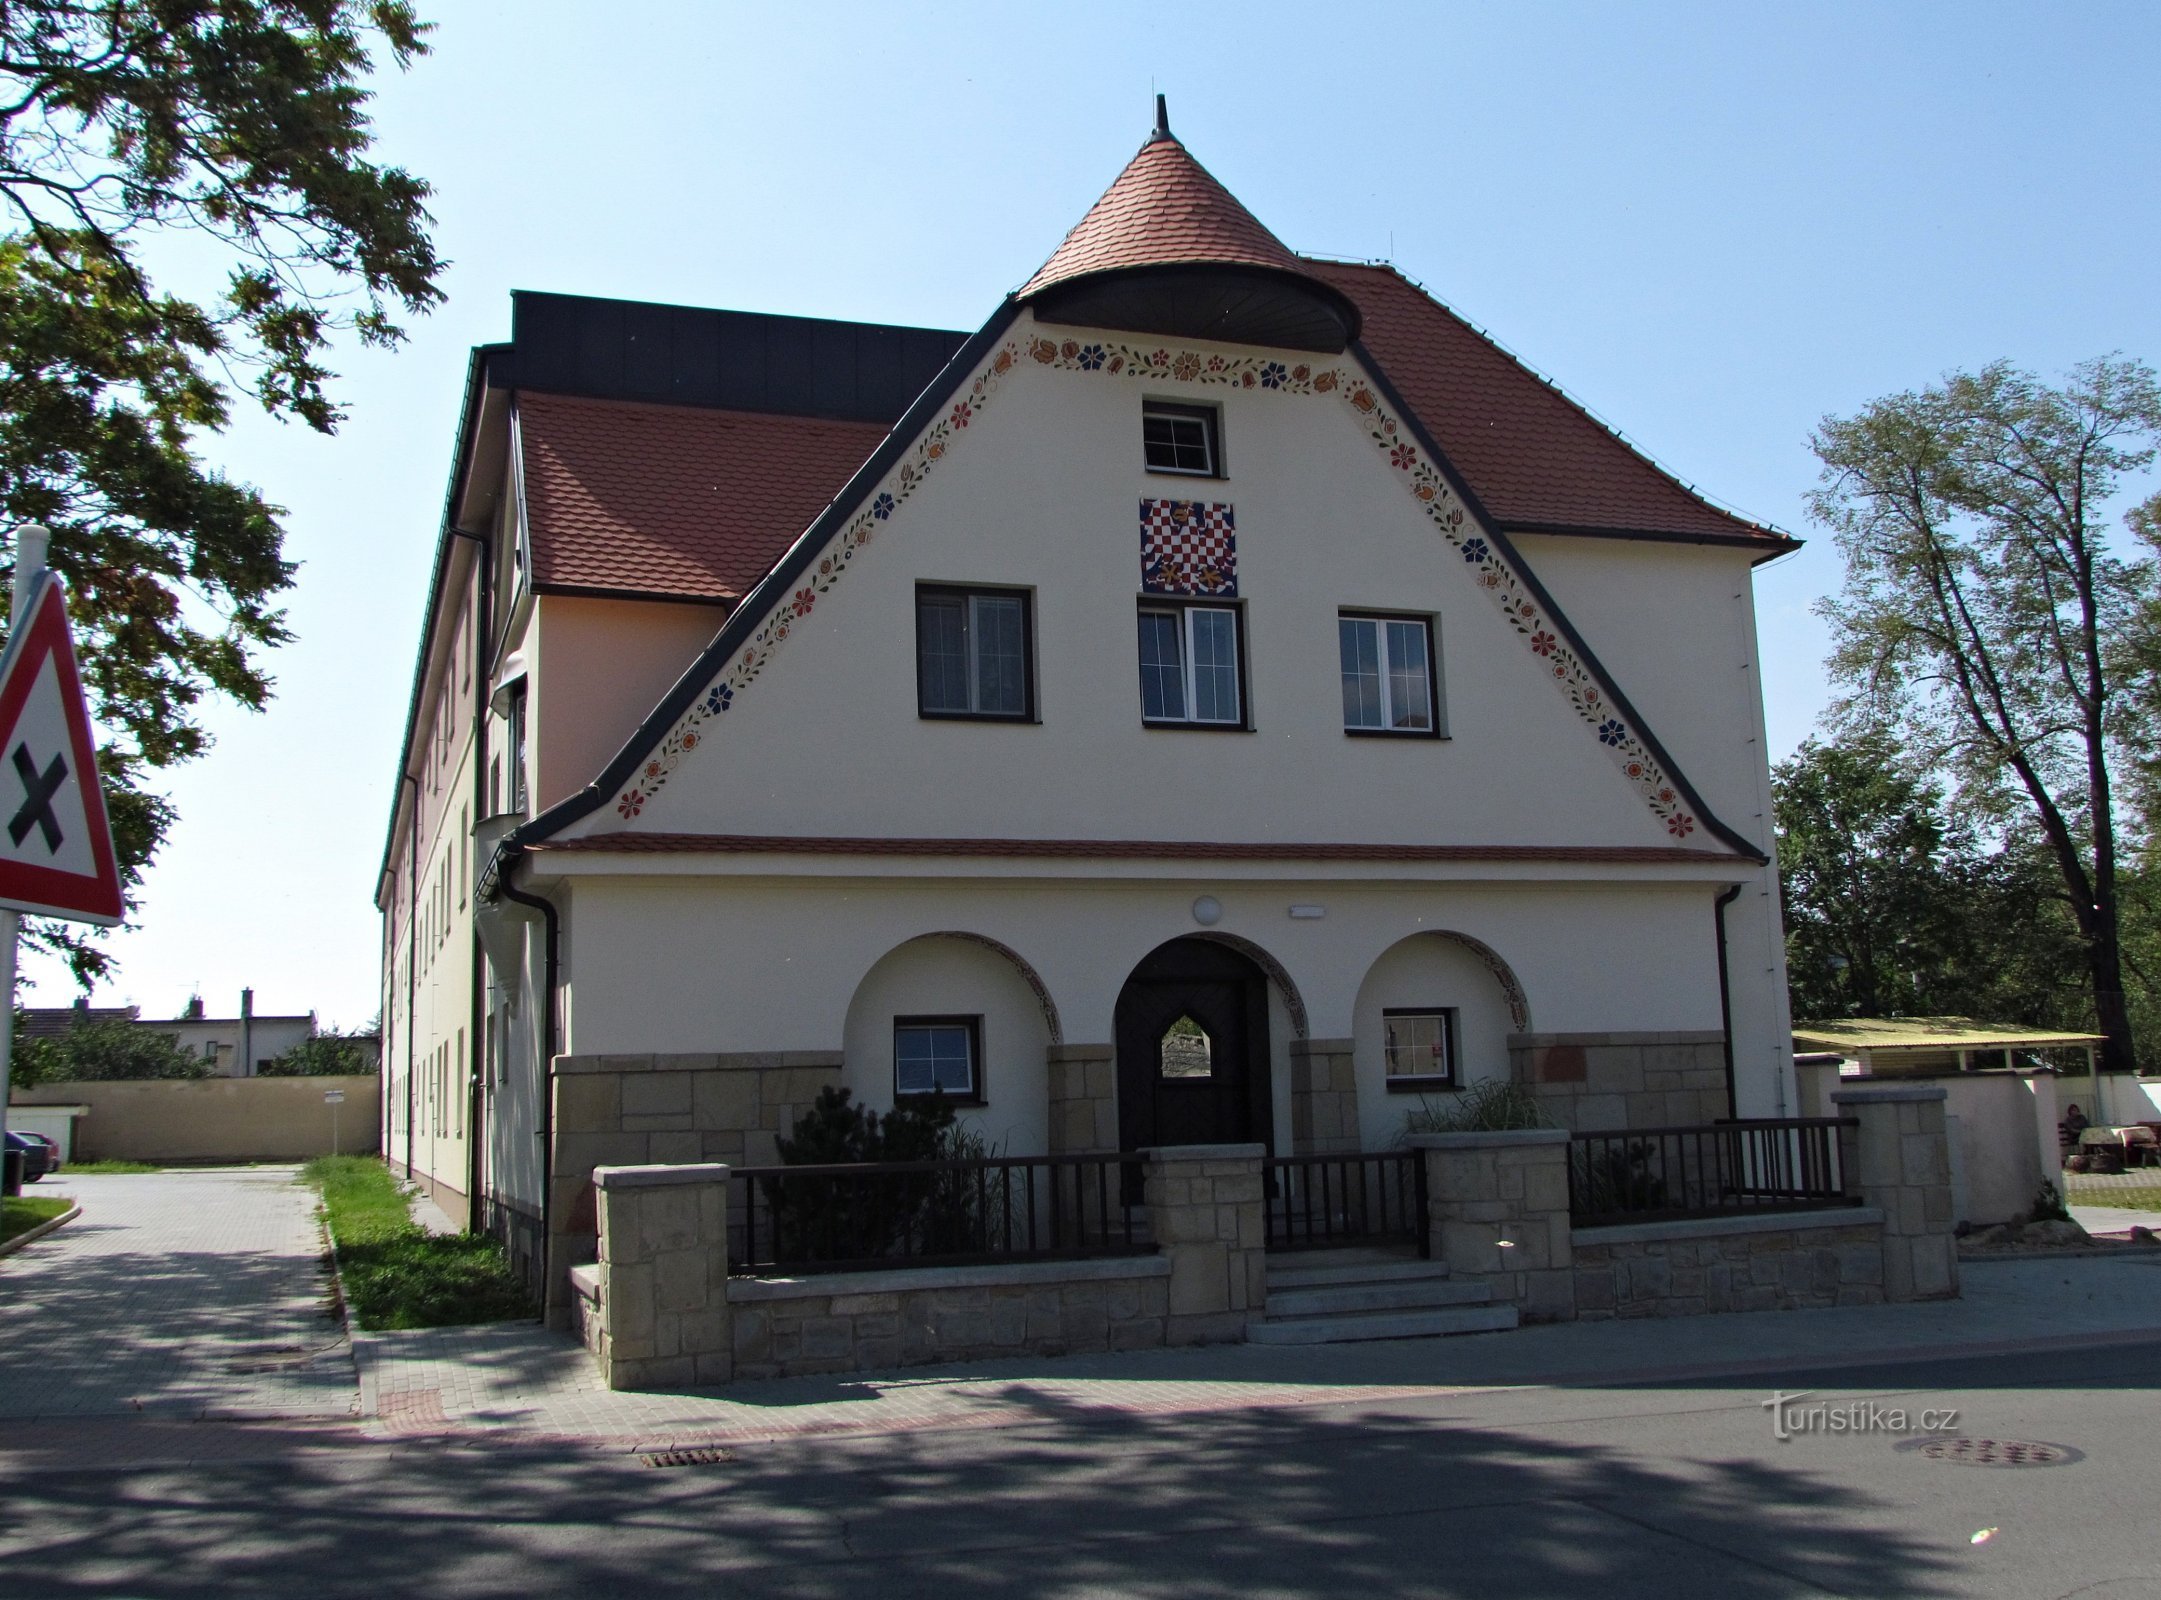 Het huis van Tyrš